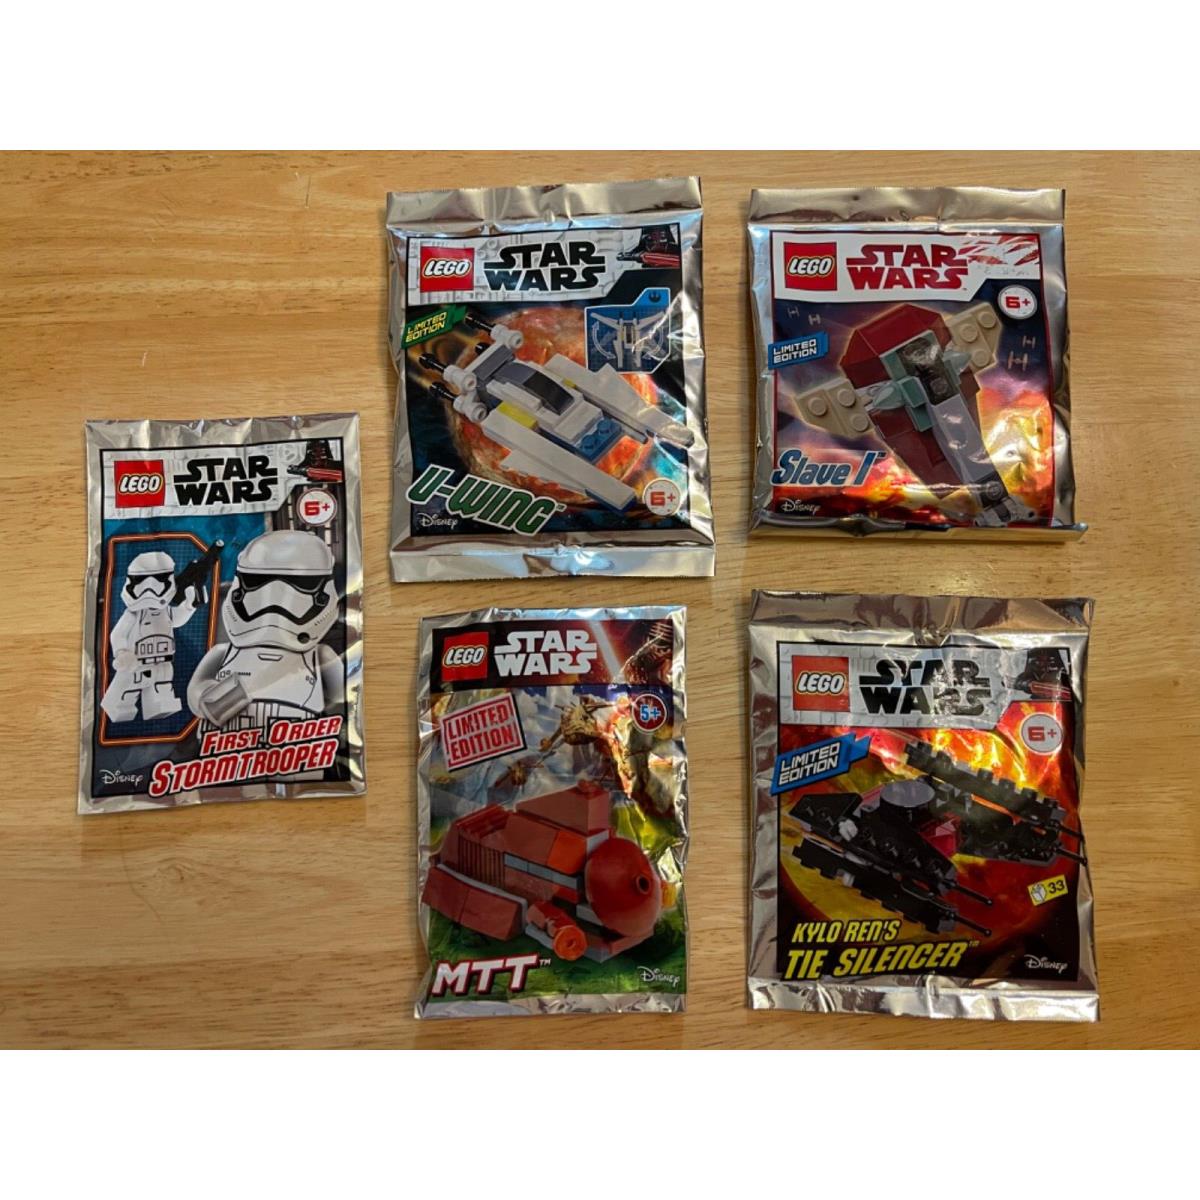 Lego Star Wars Foil Pack: U-wing/ Slave 1/ Mtt/ Tie Silencer/ 1st Order Trooper